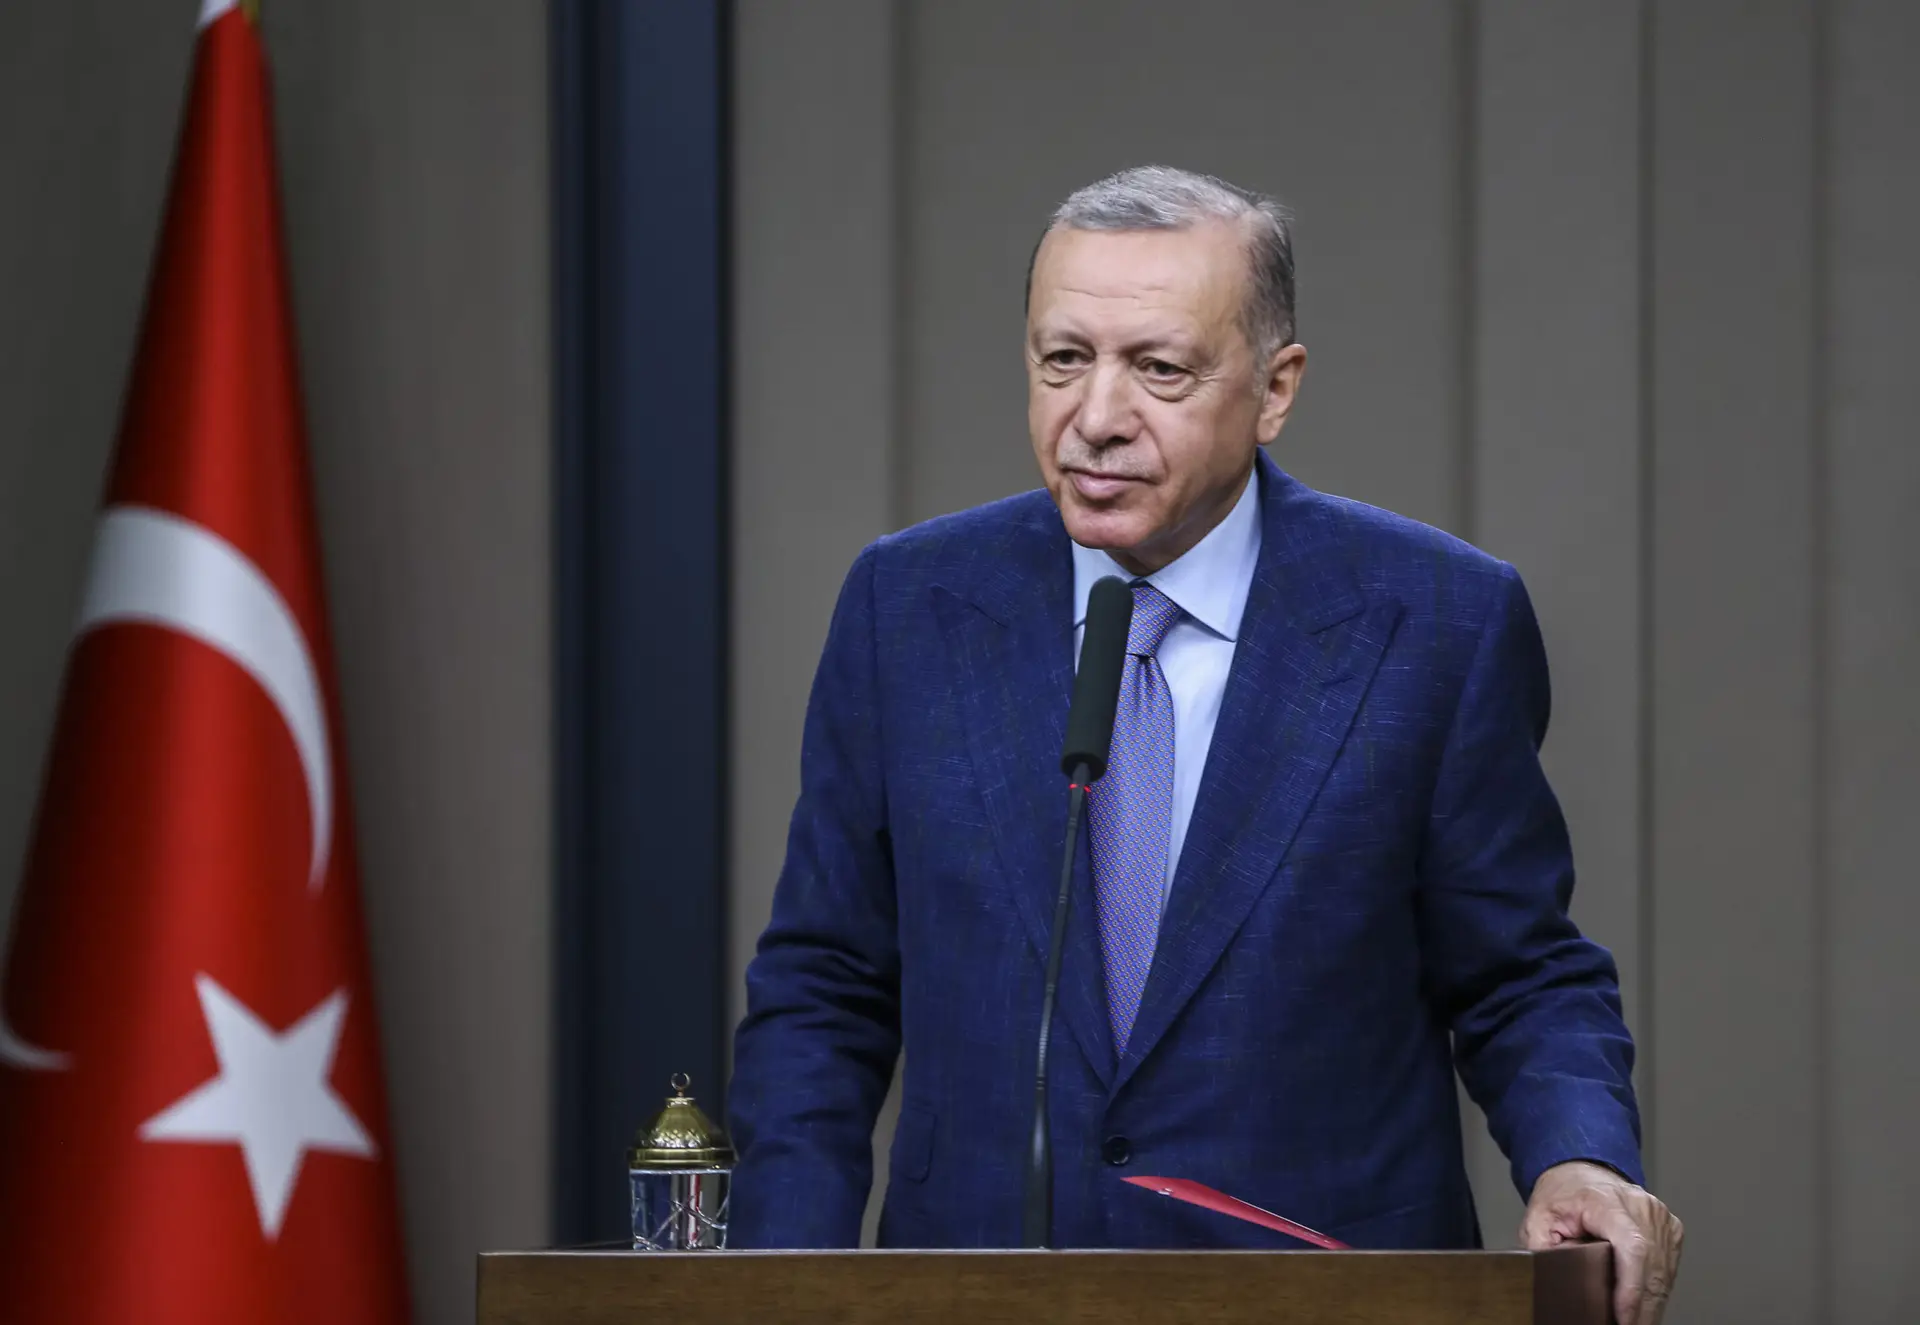 Cimeira da NATO: Erdogan obteve “plena cooperação” de Finlândia e Suécia contra o PKK